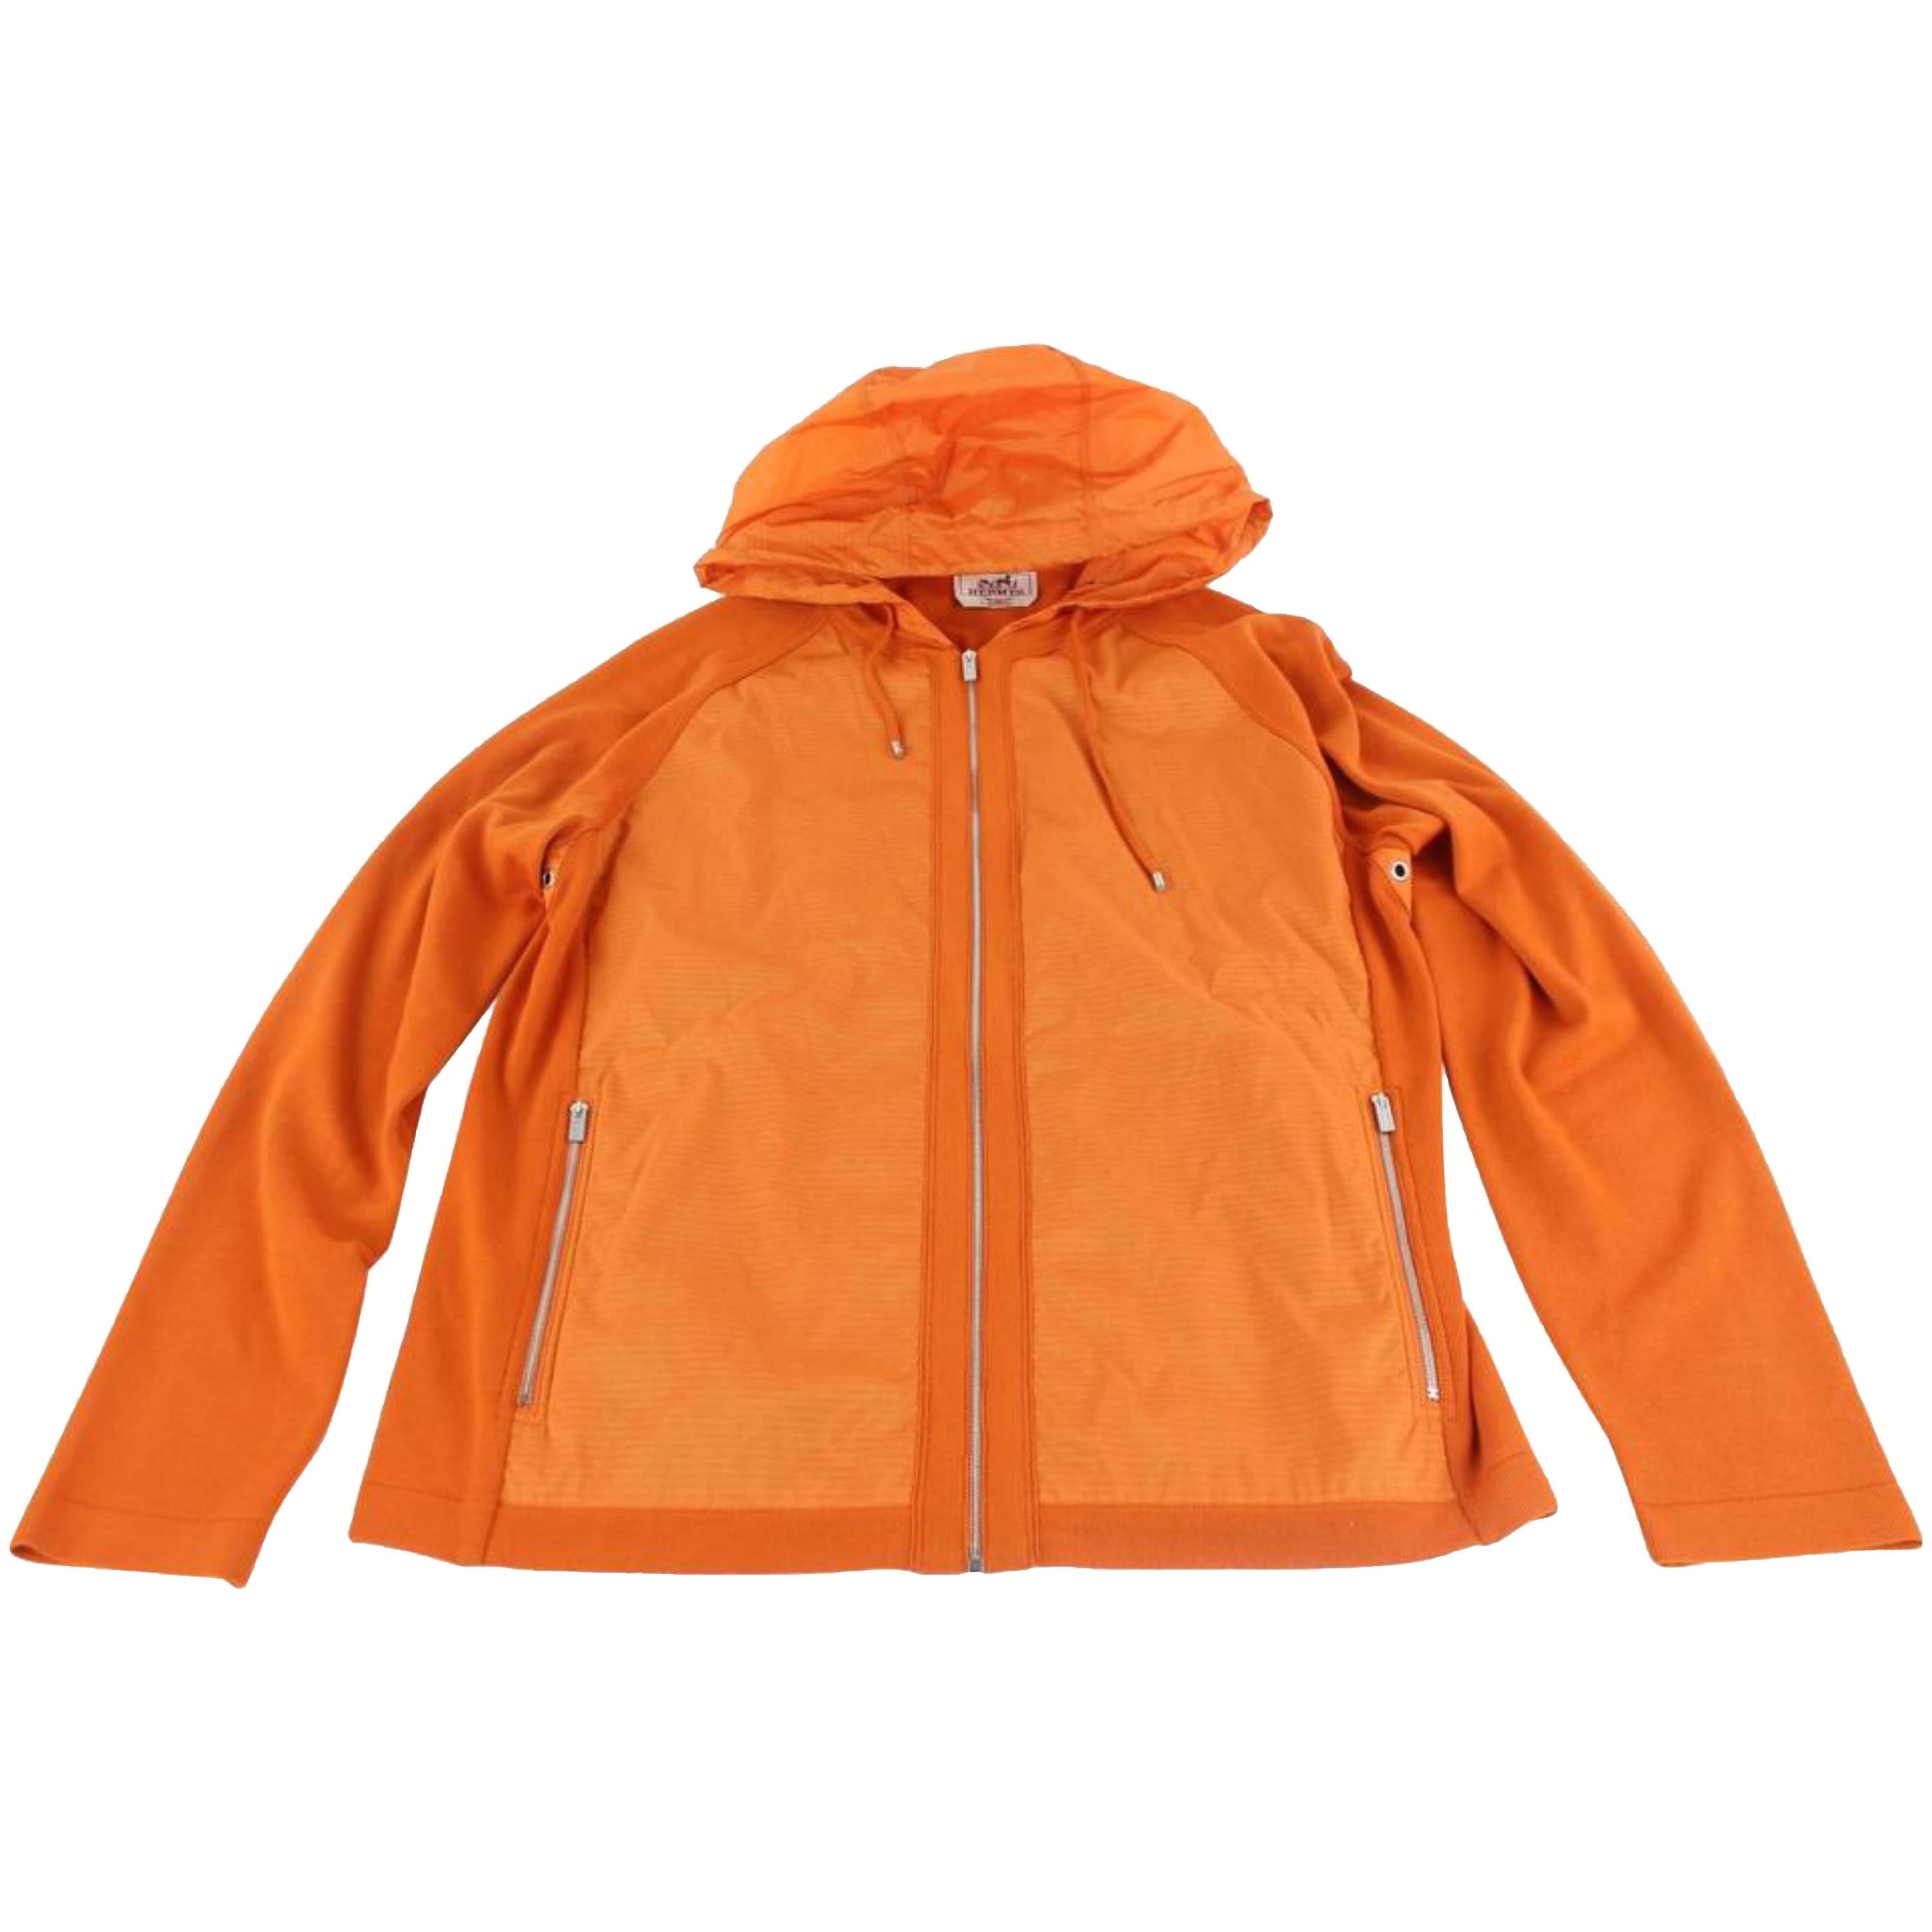 Hermès Orange Blousson Zippe A Capuche Hooded Zip Up Parka Jacket 58hz1009  For Sale